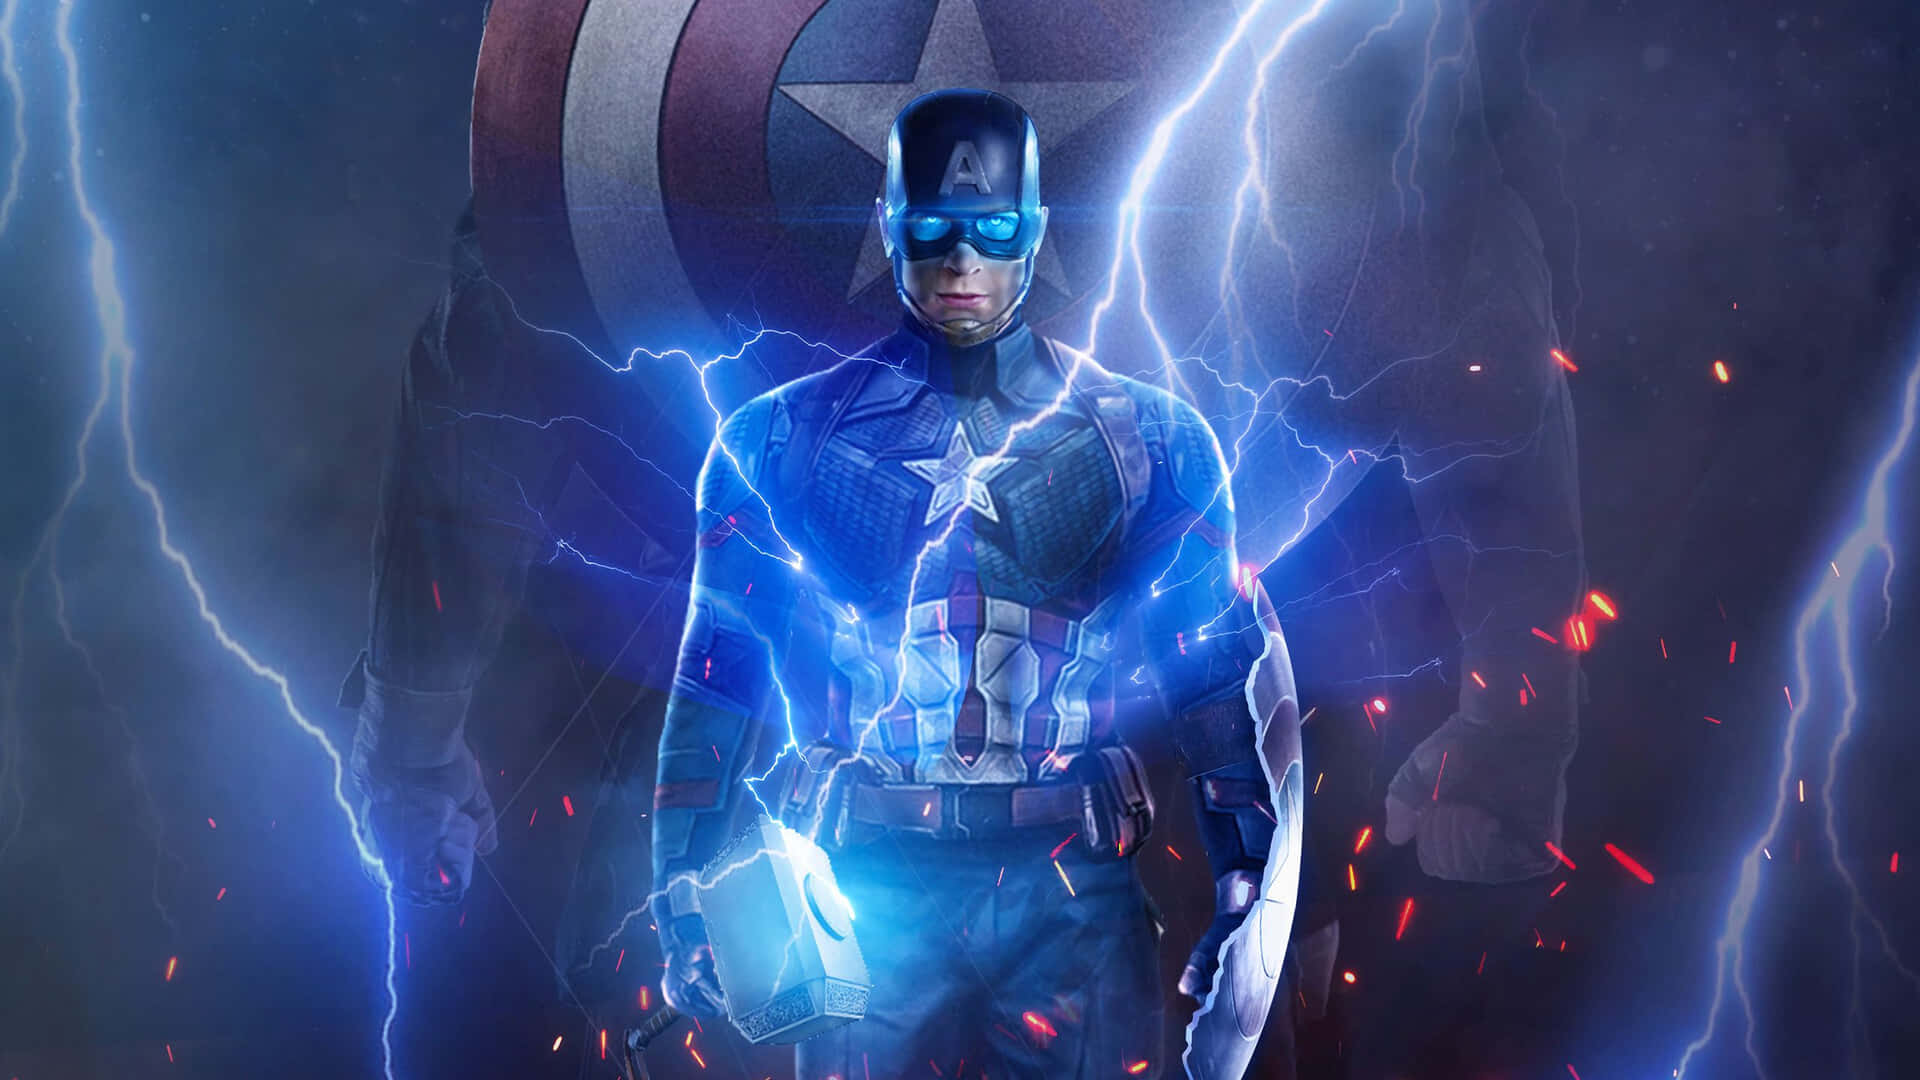 Elprimer Vengador De Marvel, Capitán América, Digno. Fondo de pantalla